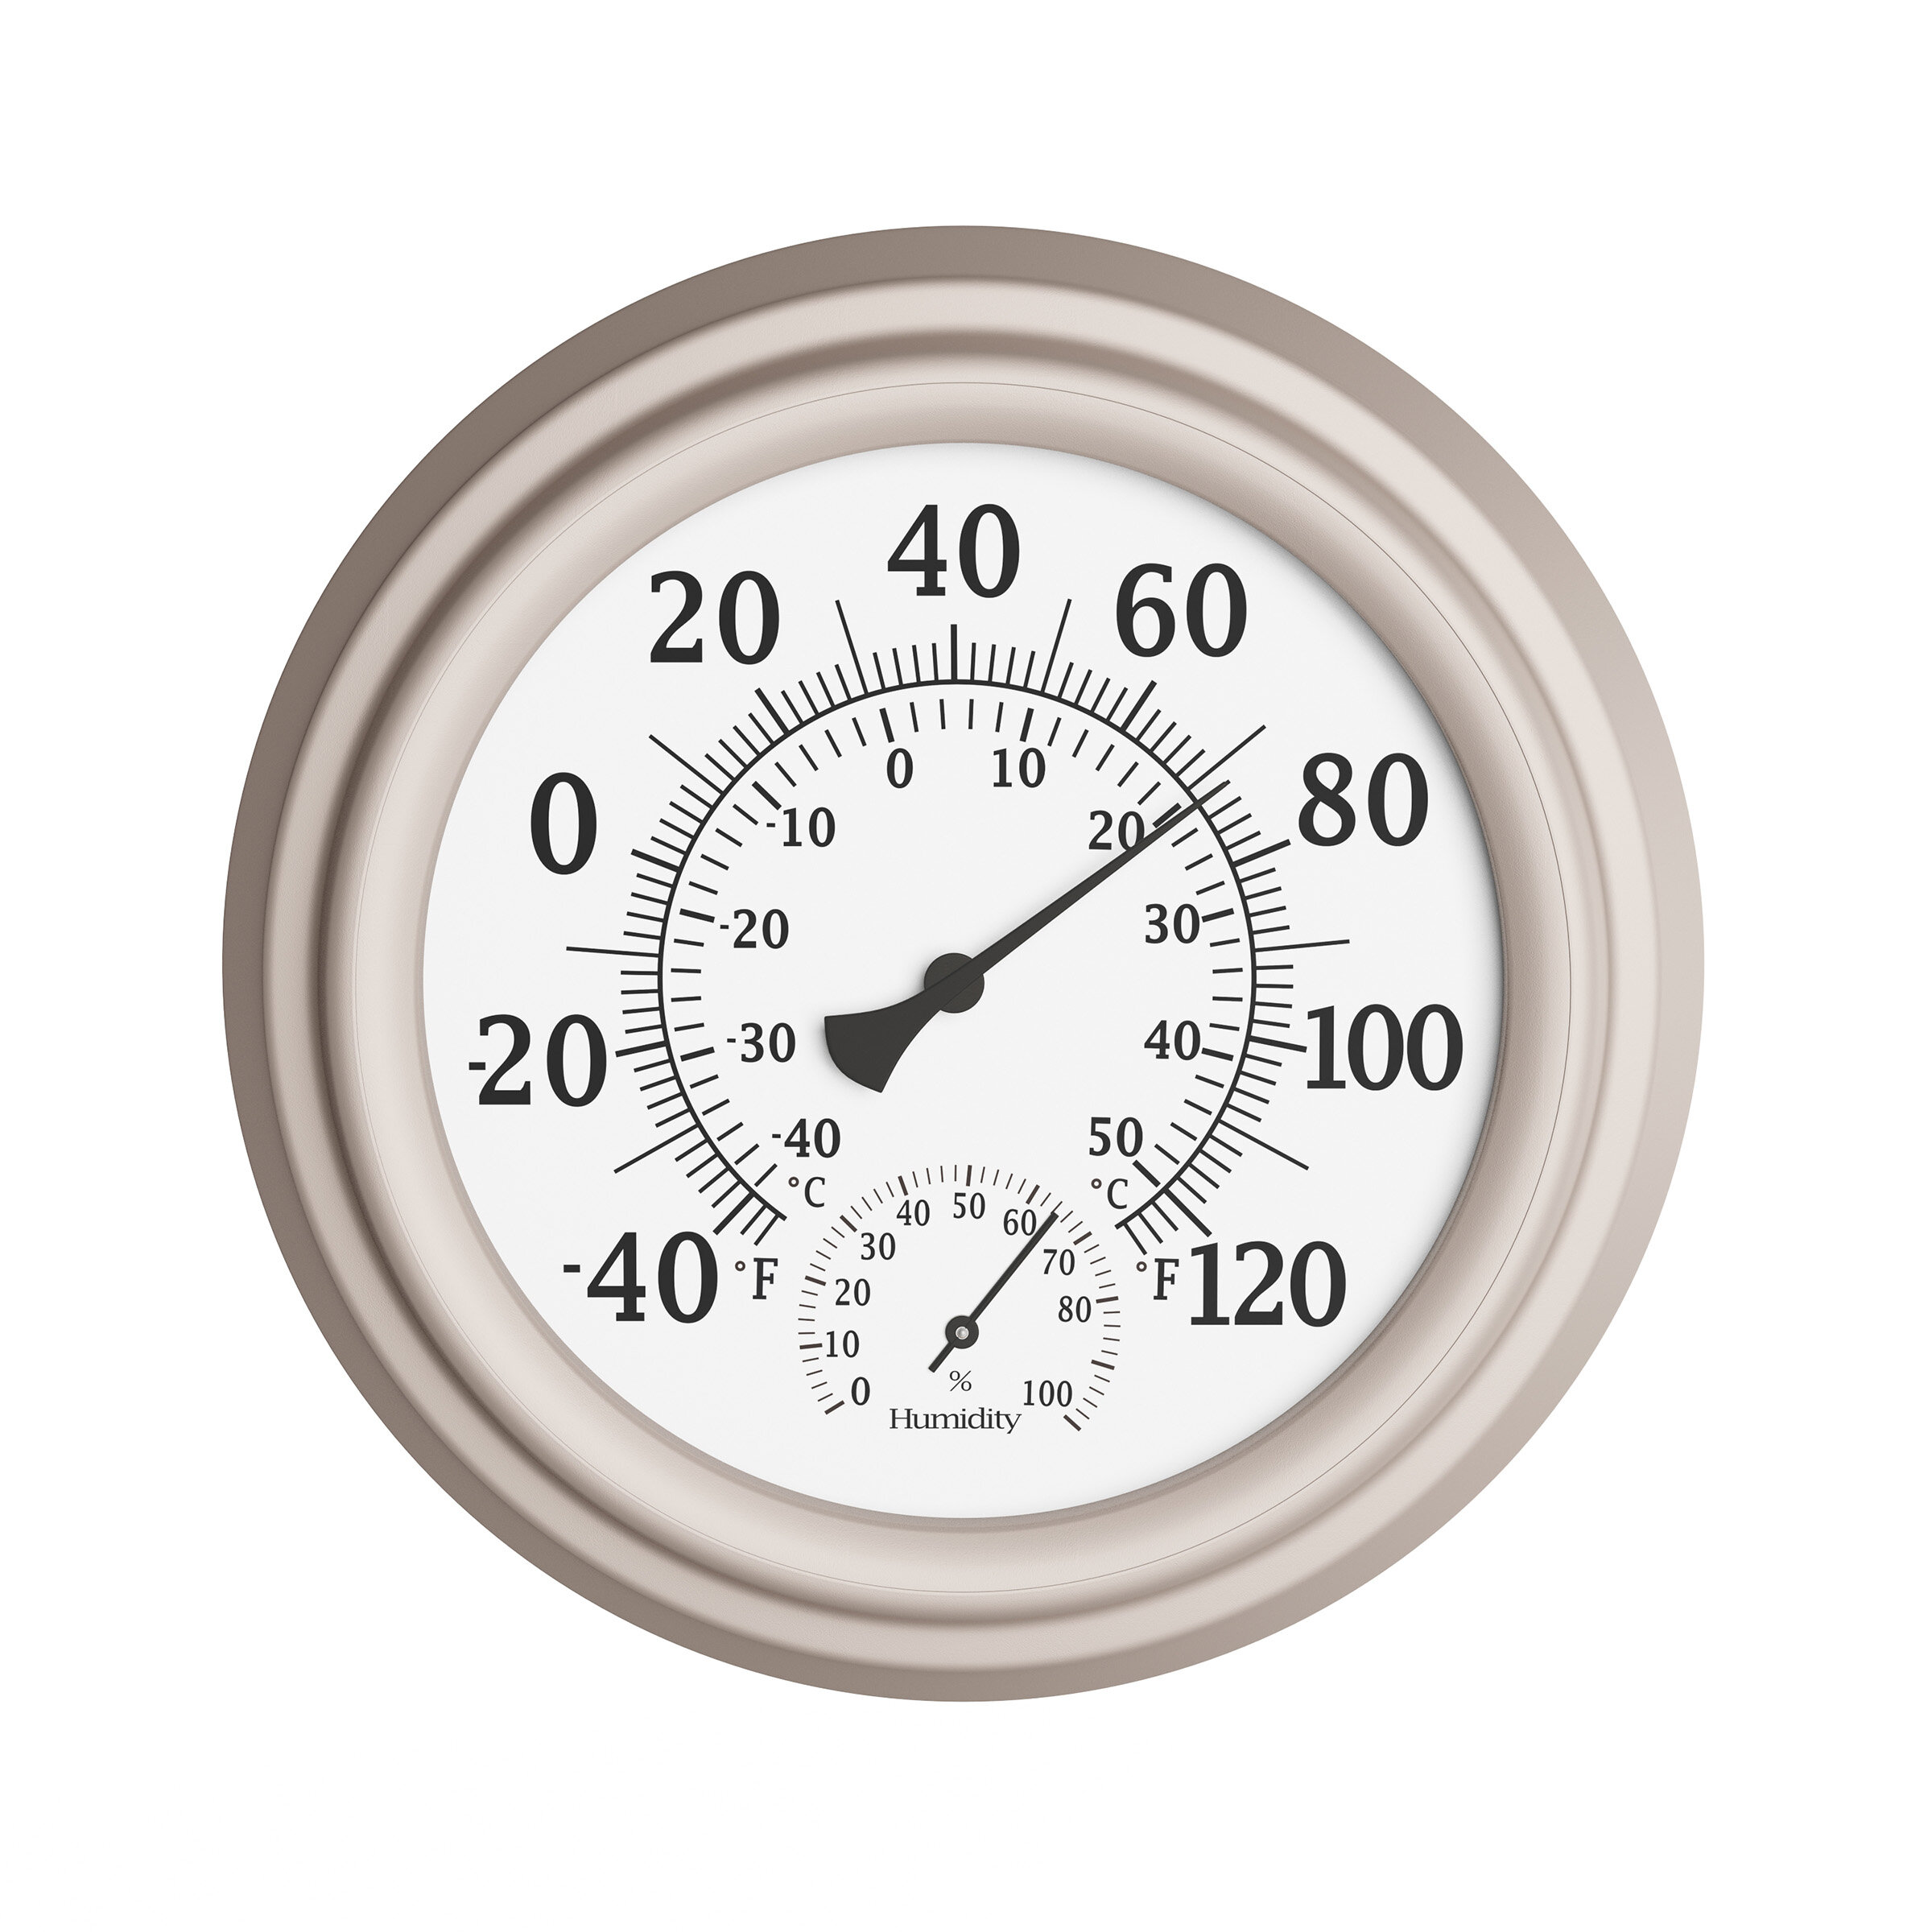 Pure Garden 18 Thermometer & Hygrometer Indoor/Outdoor Wall Clock - Black